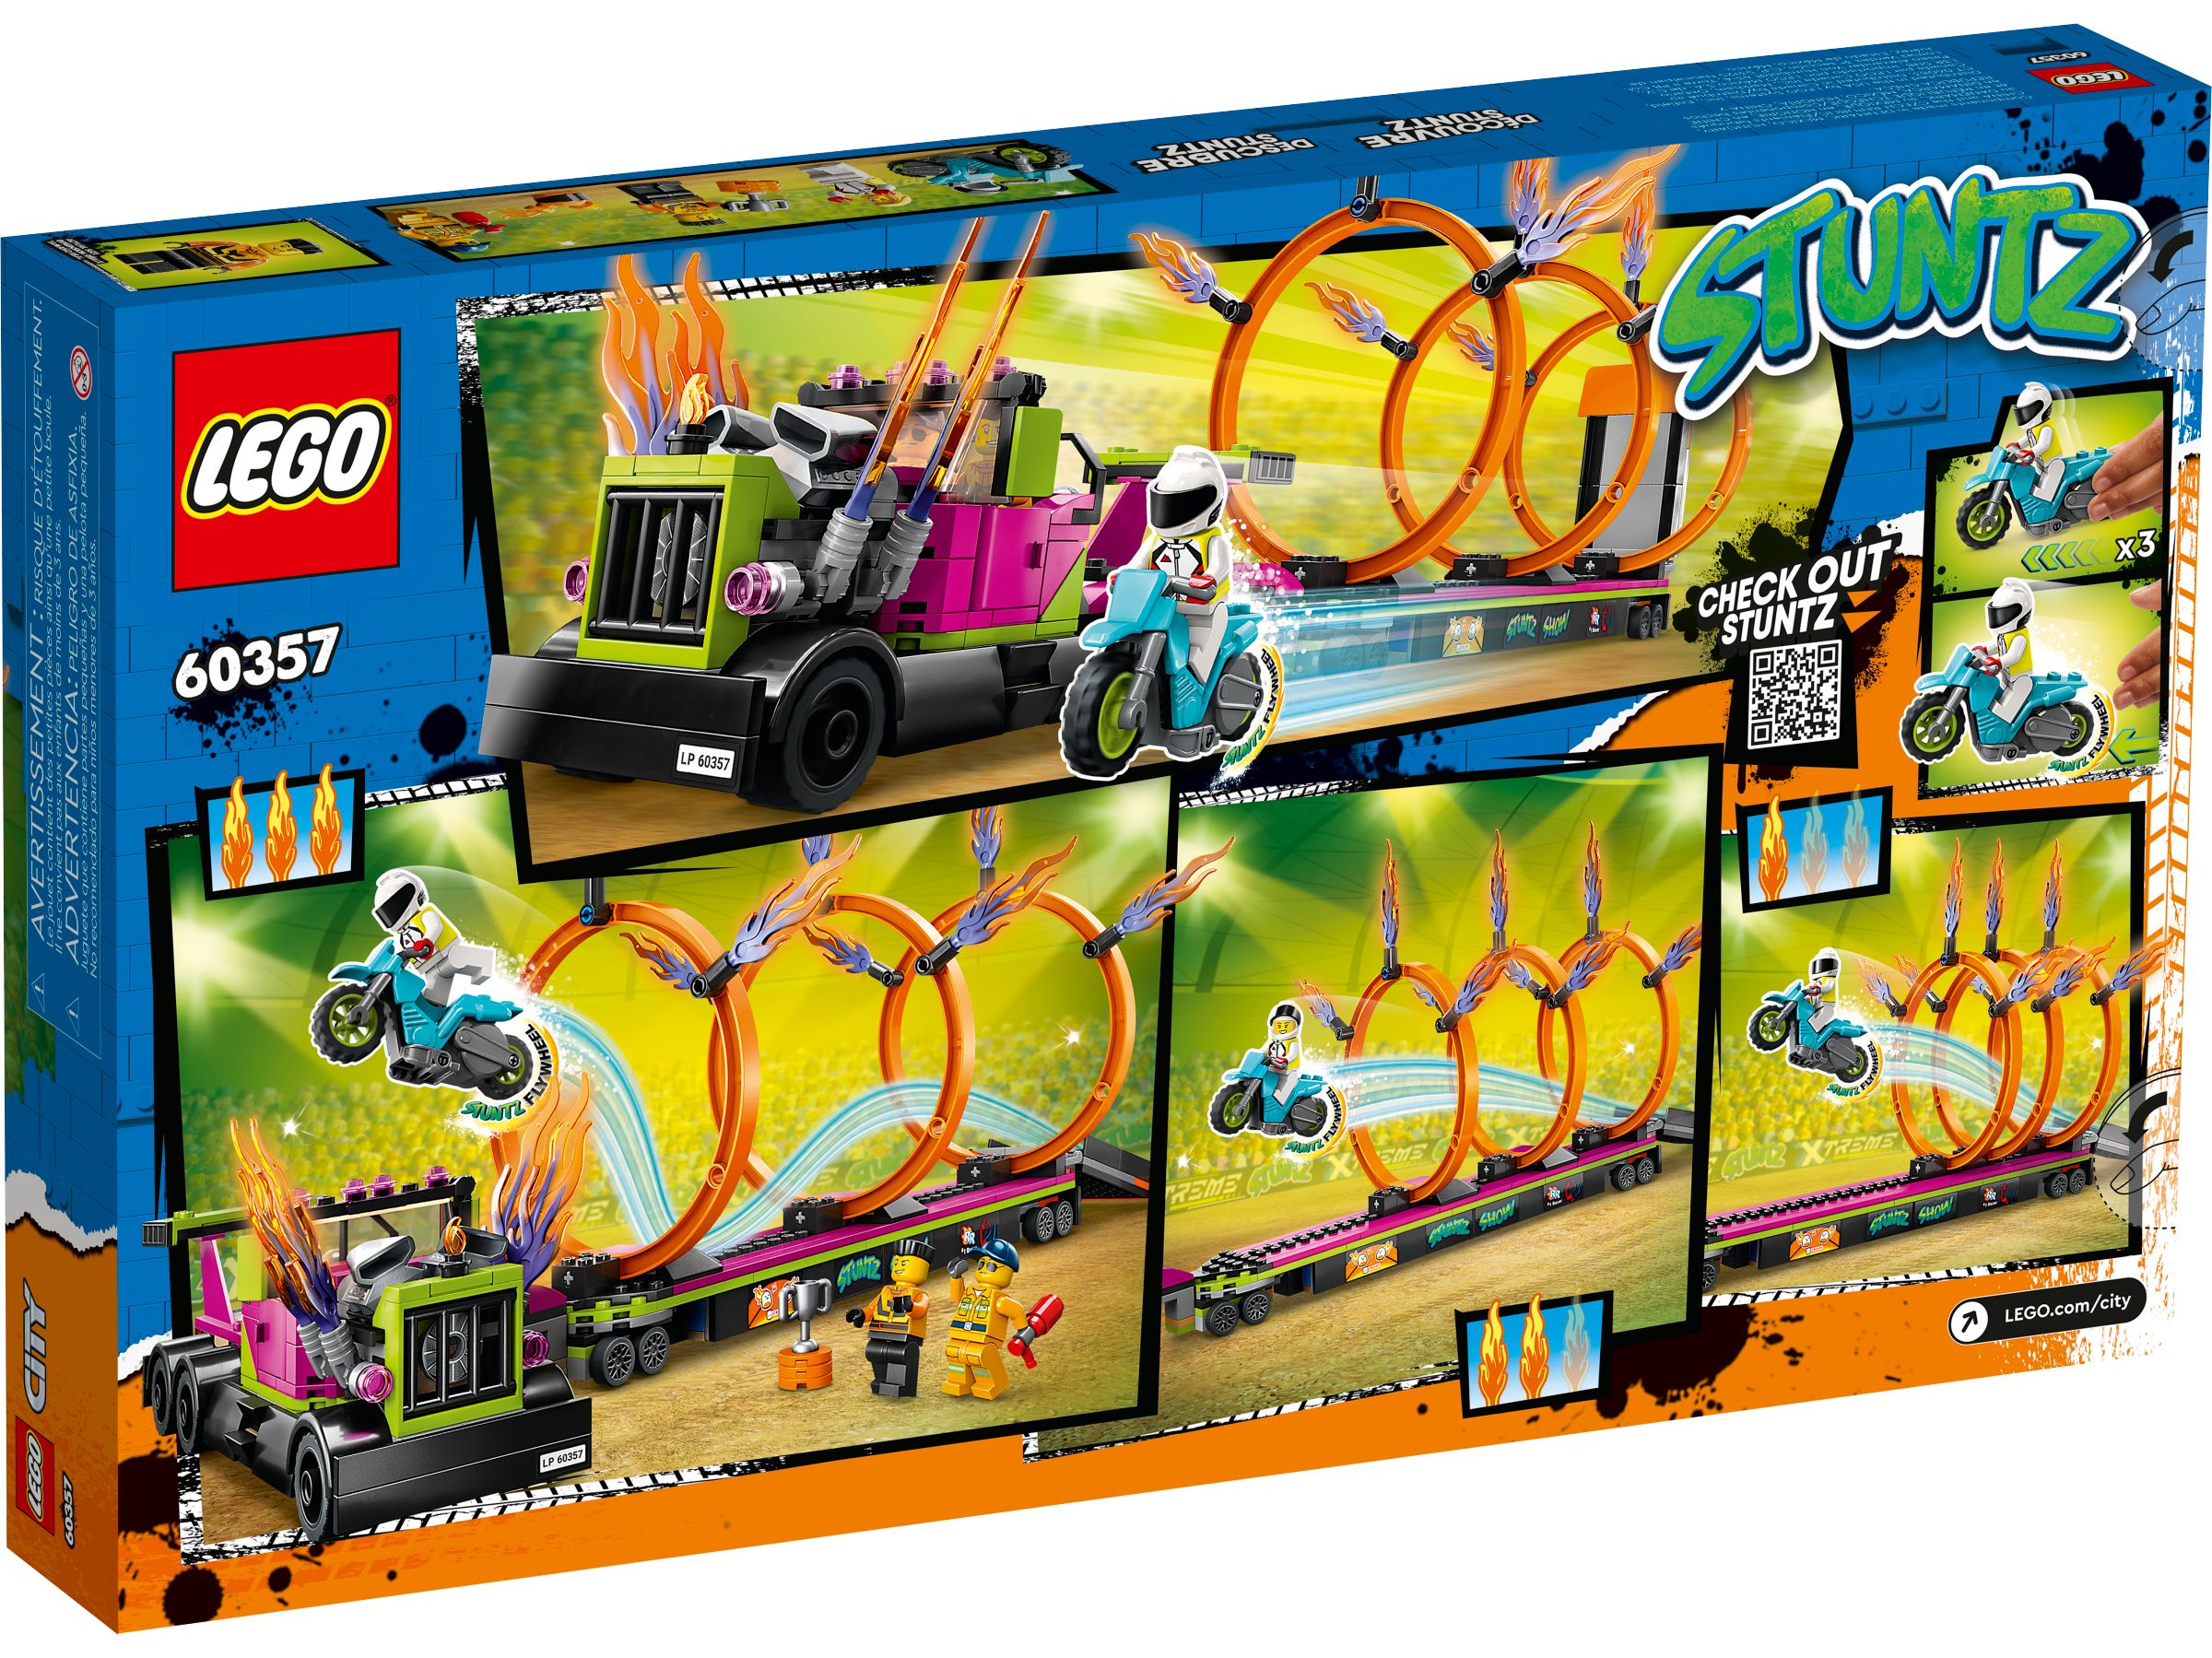 LEGO City 60357 Stunttruck & Feuerreifen-Challenge LEGO_60357_alt7.jpg